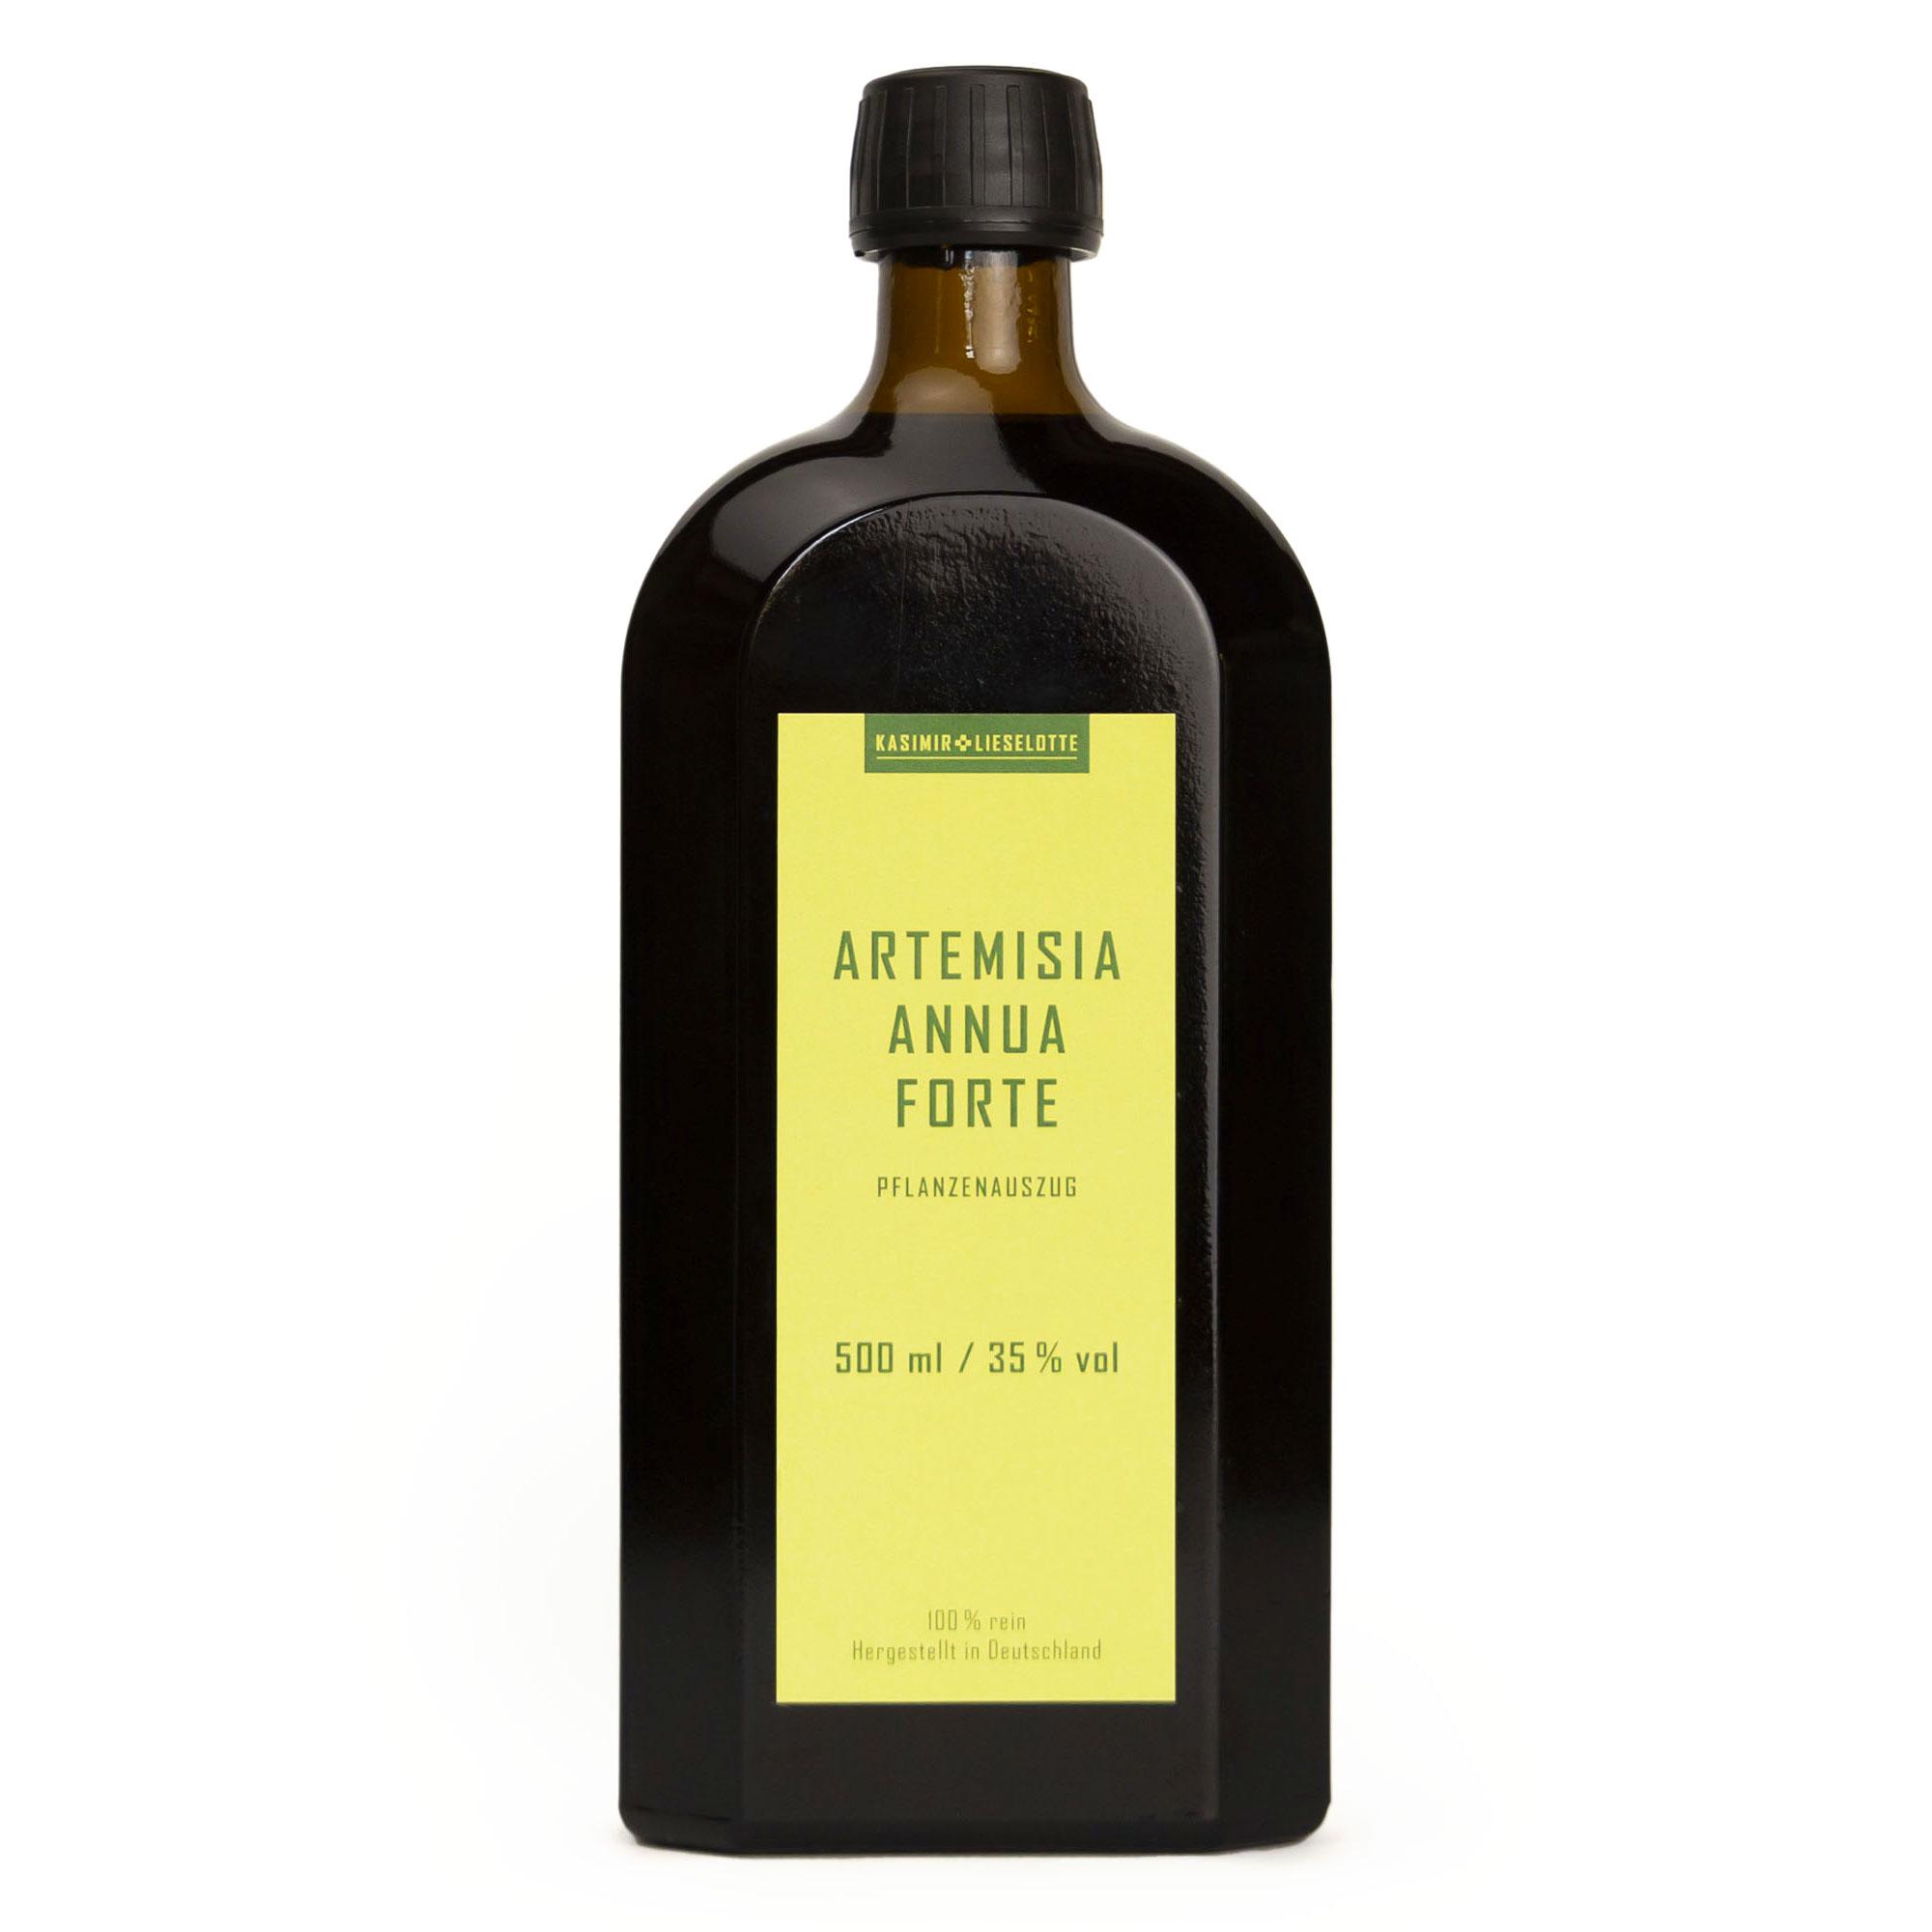 Artemisia annua Forte Pflanzenauszug - Auswahl: 500 ml